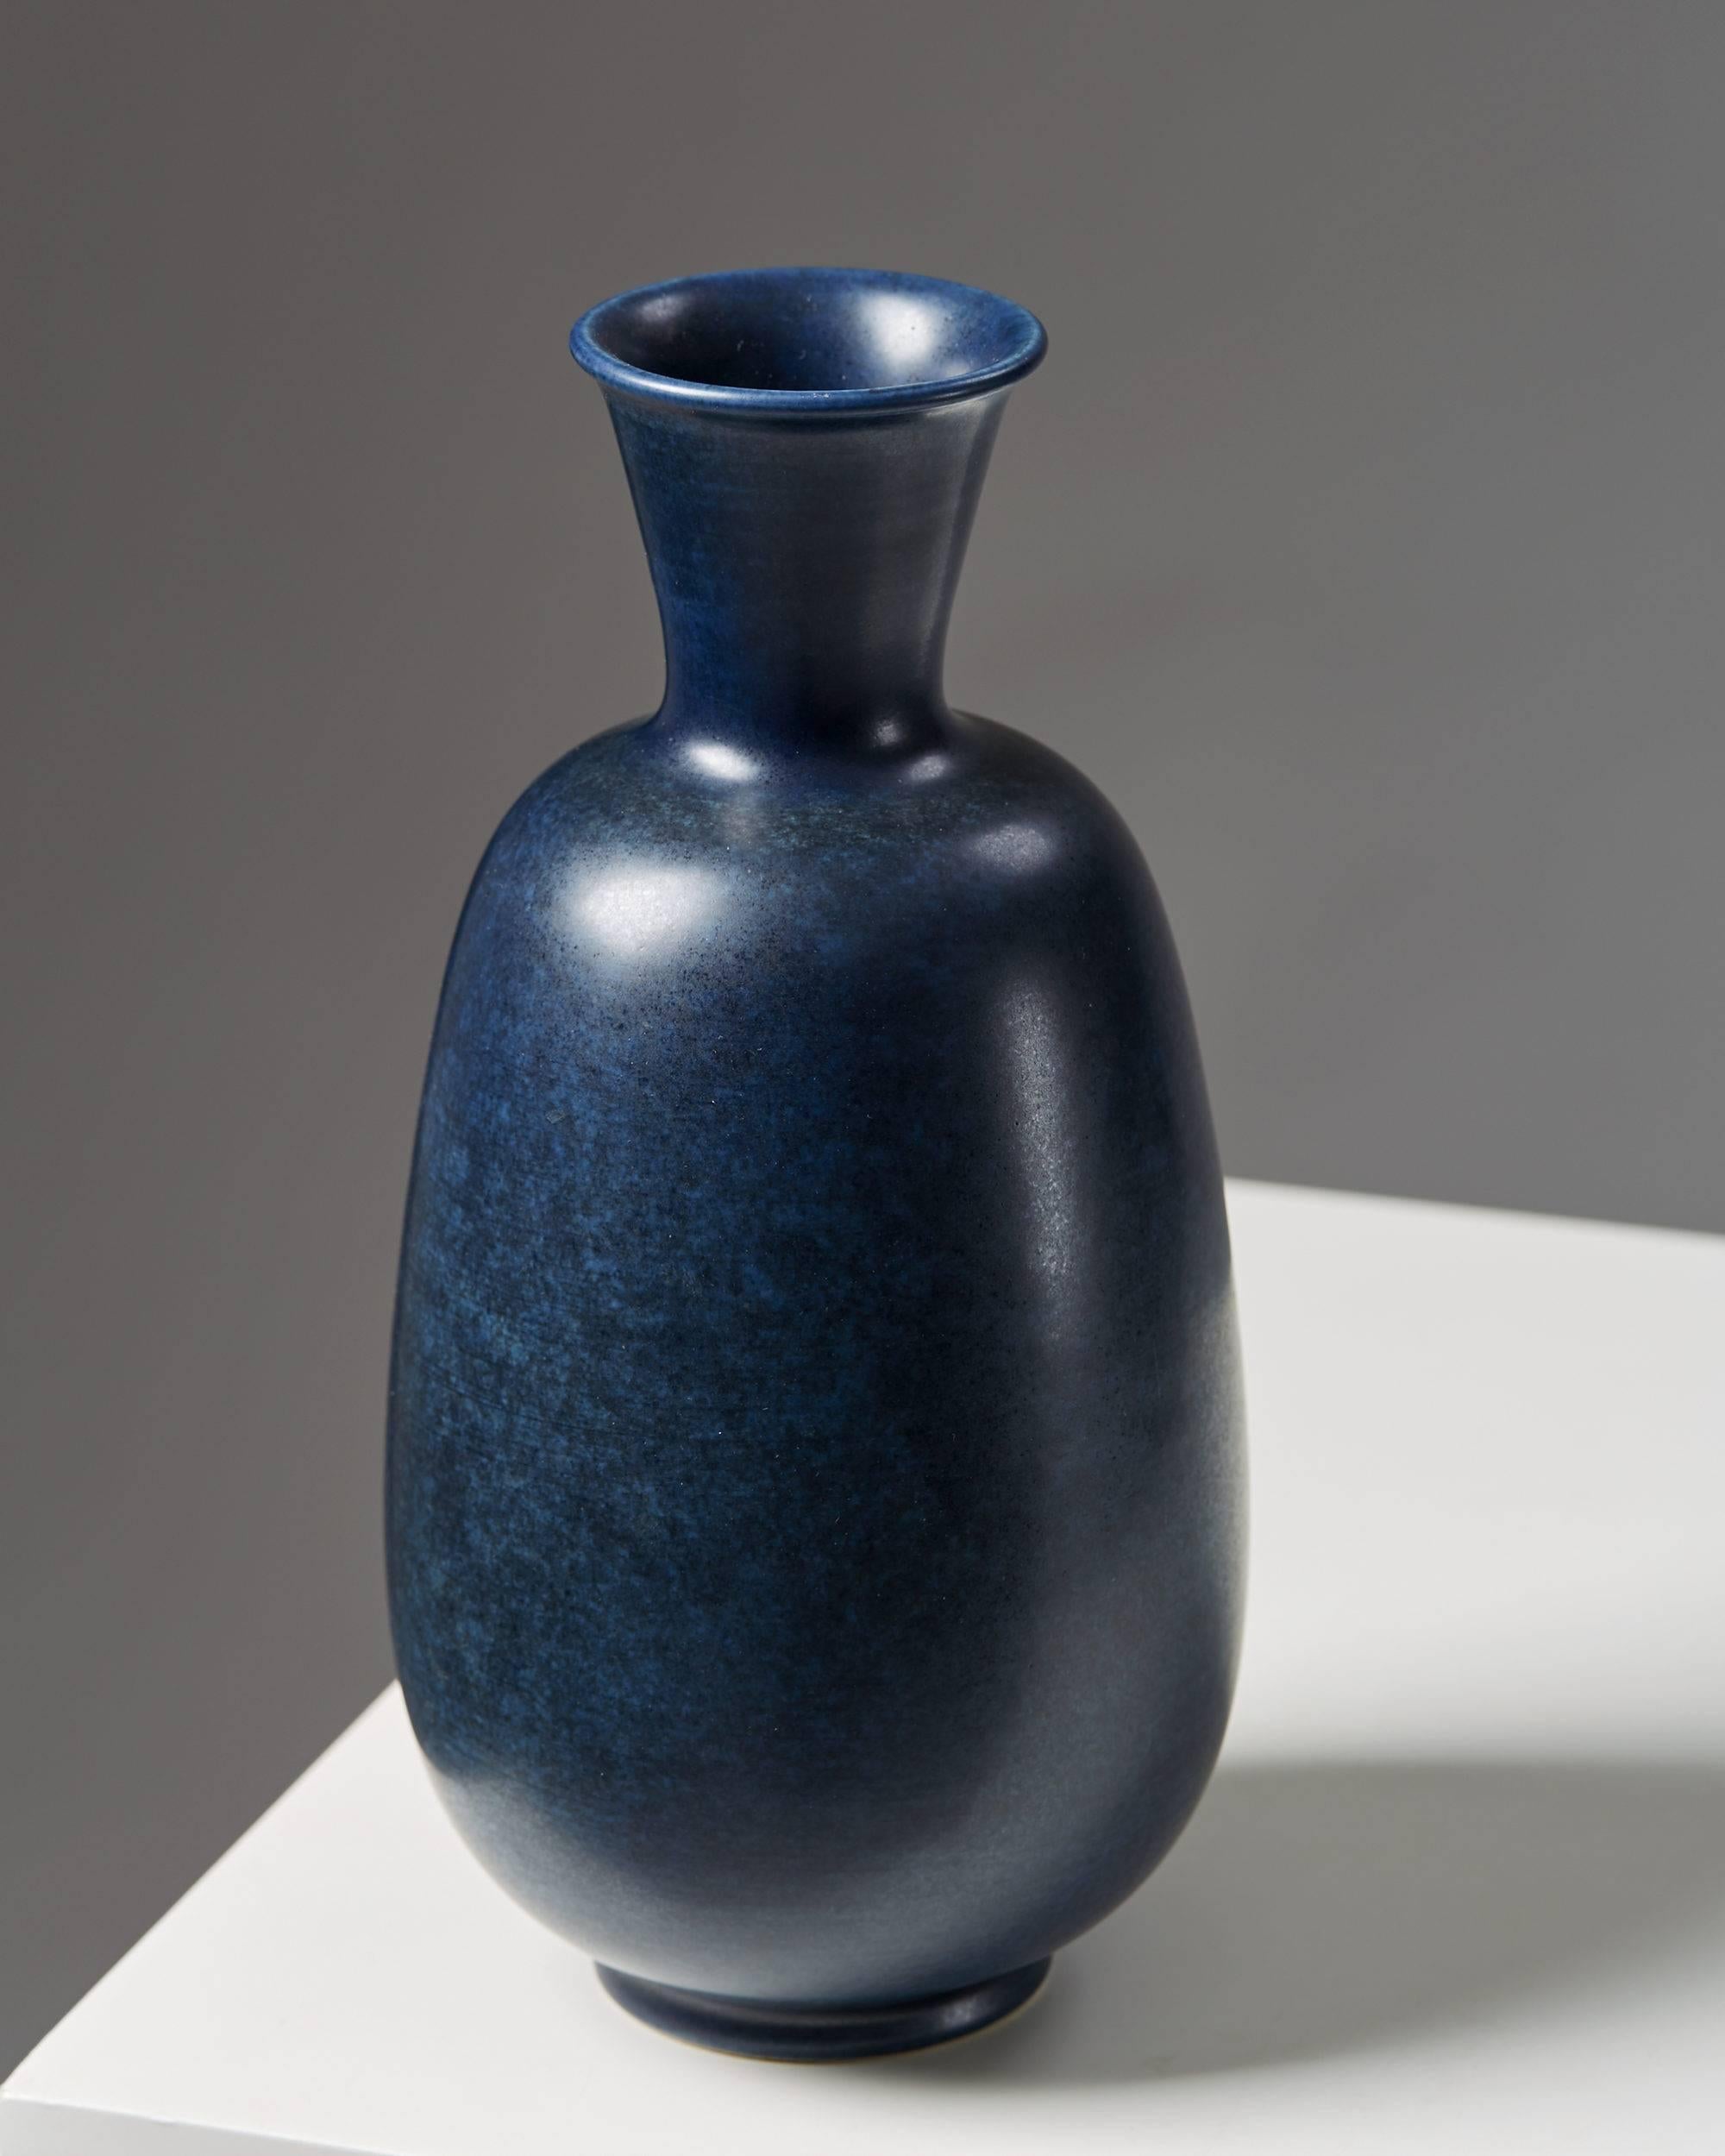 Vase designed by Erich and Ingrid Triller for Tobo, Sweden.
1950s.

Stoneware. Unique.